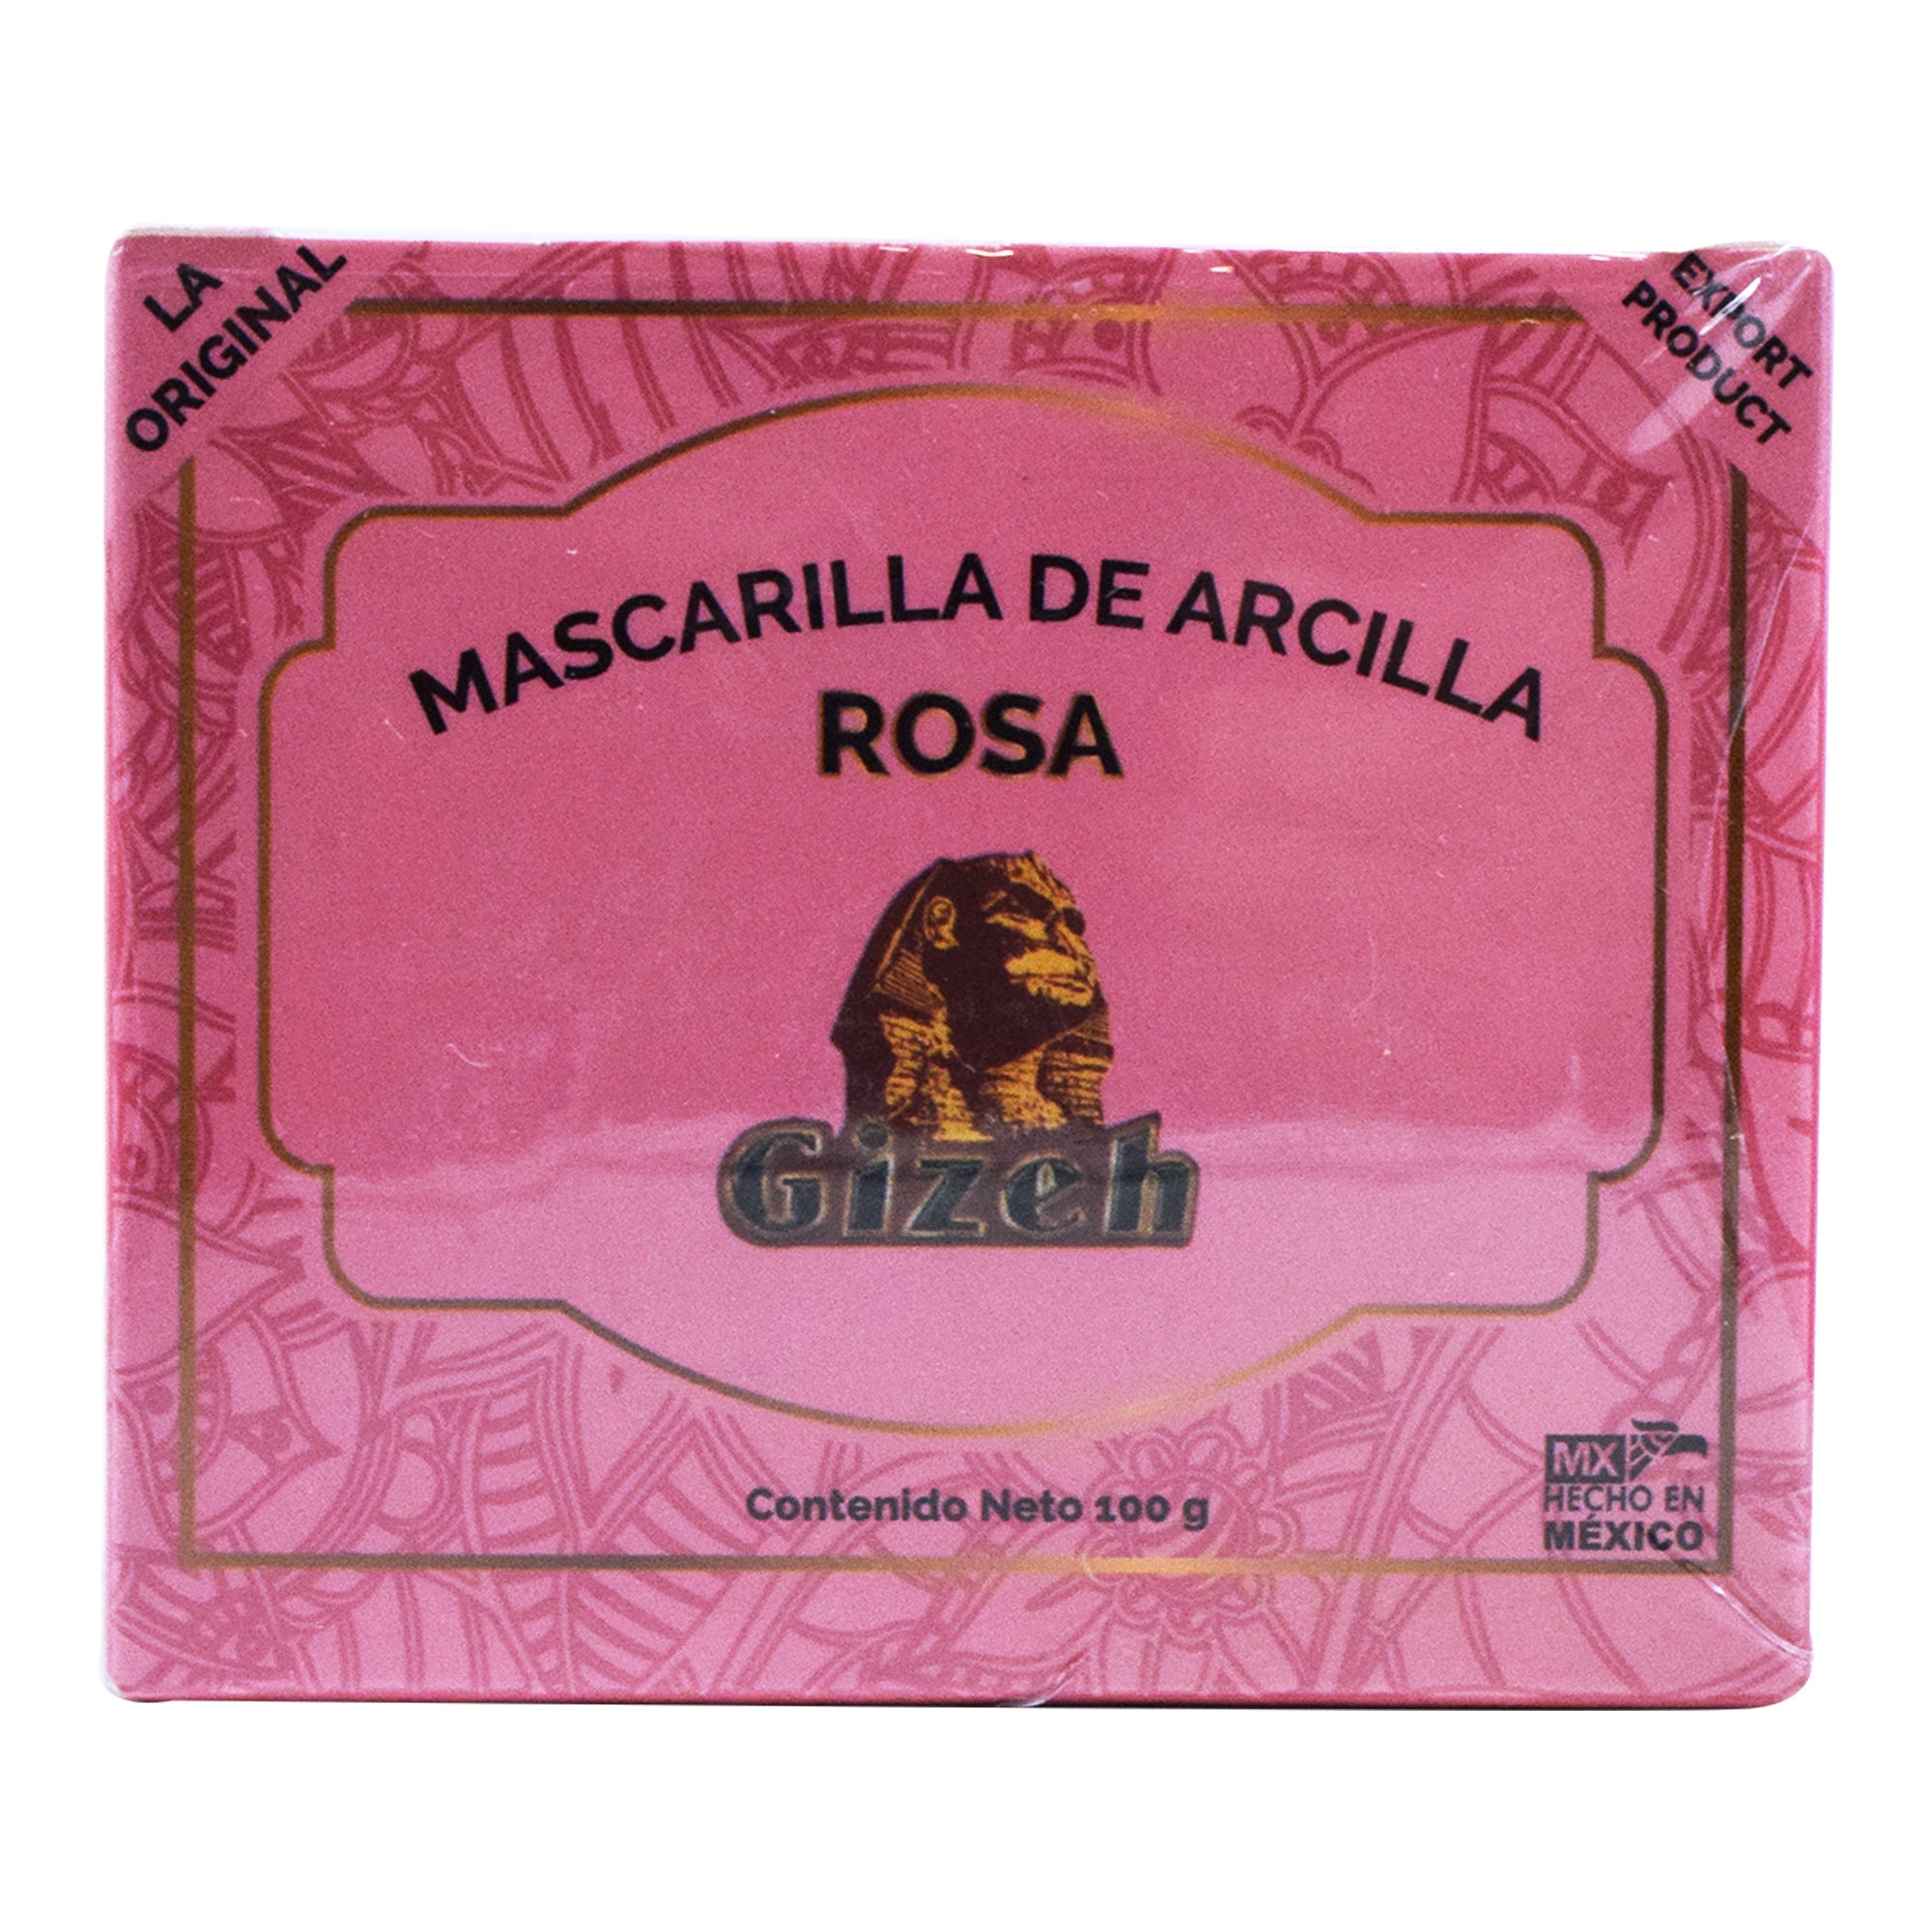 MASCARILLA DE ARCILLA ROSA POLVO 100 G